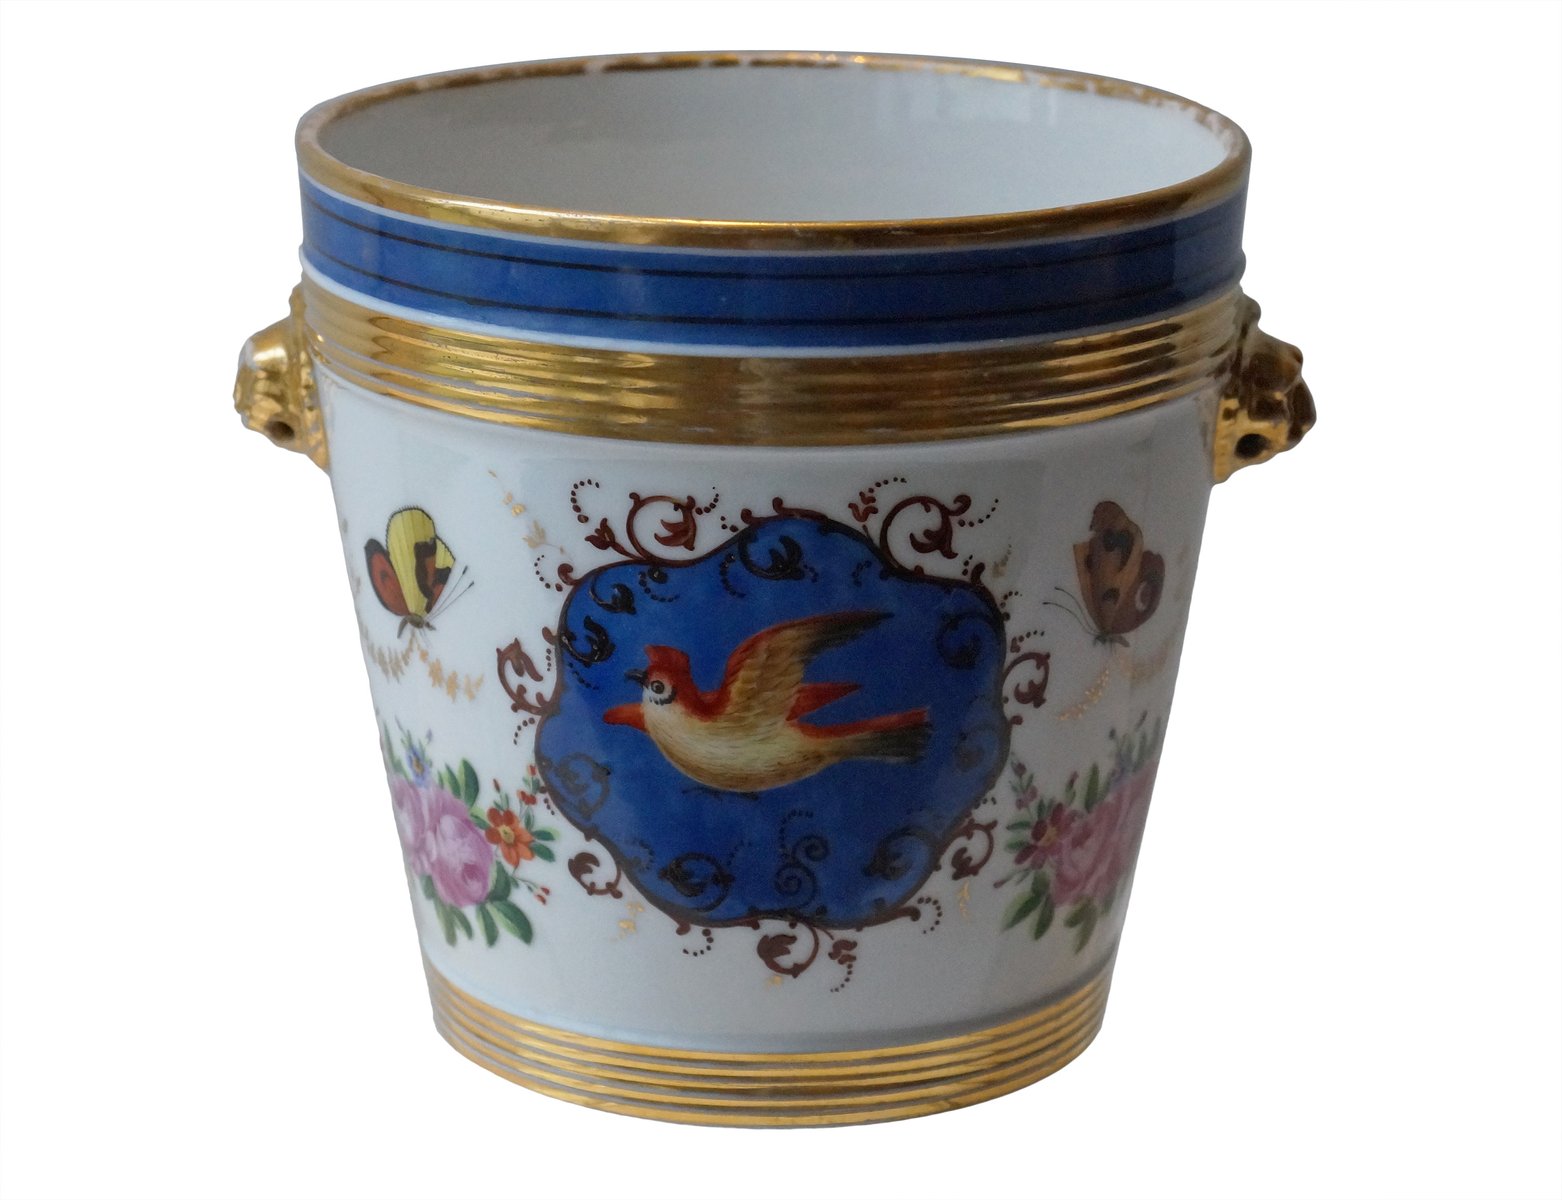  Antique  Parisian Porcelain Flower  Pot  1880s for sale at 